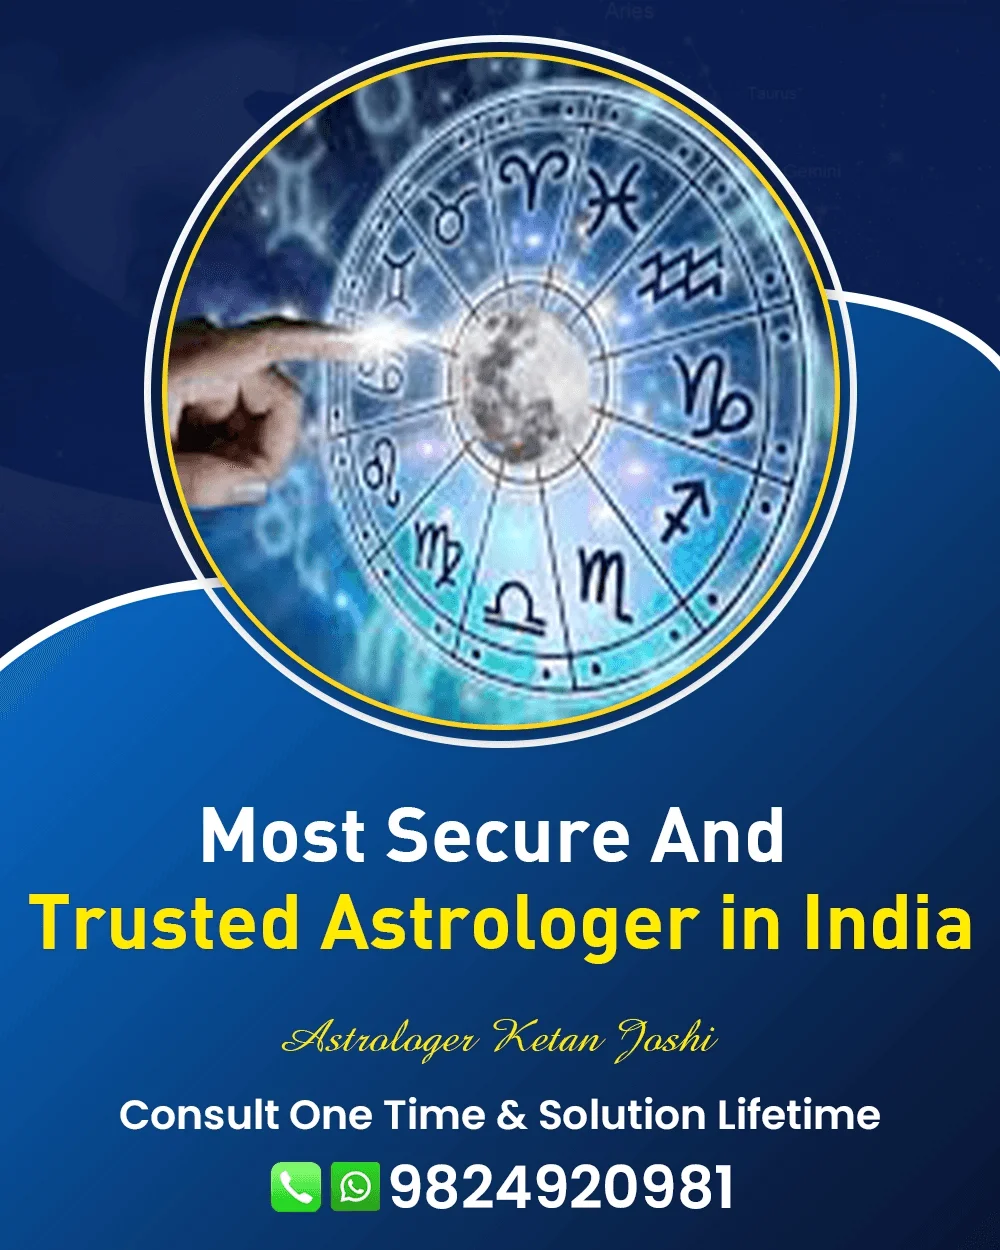 Best Astrologer In Aligarh